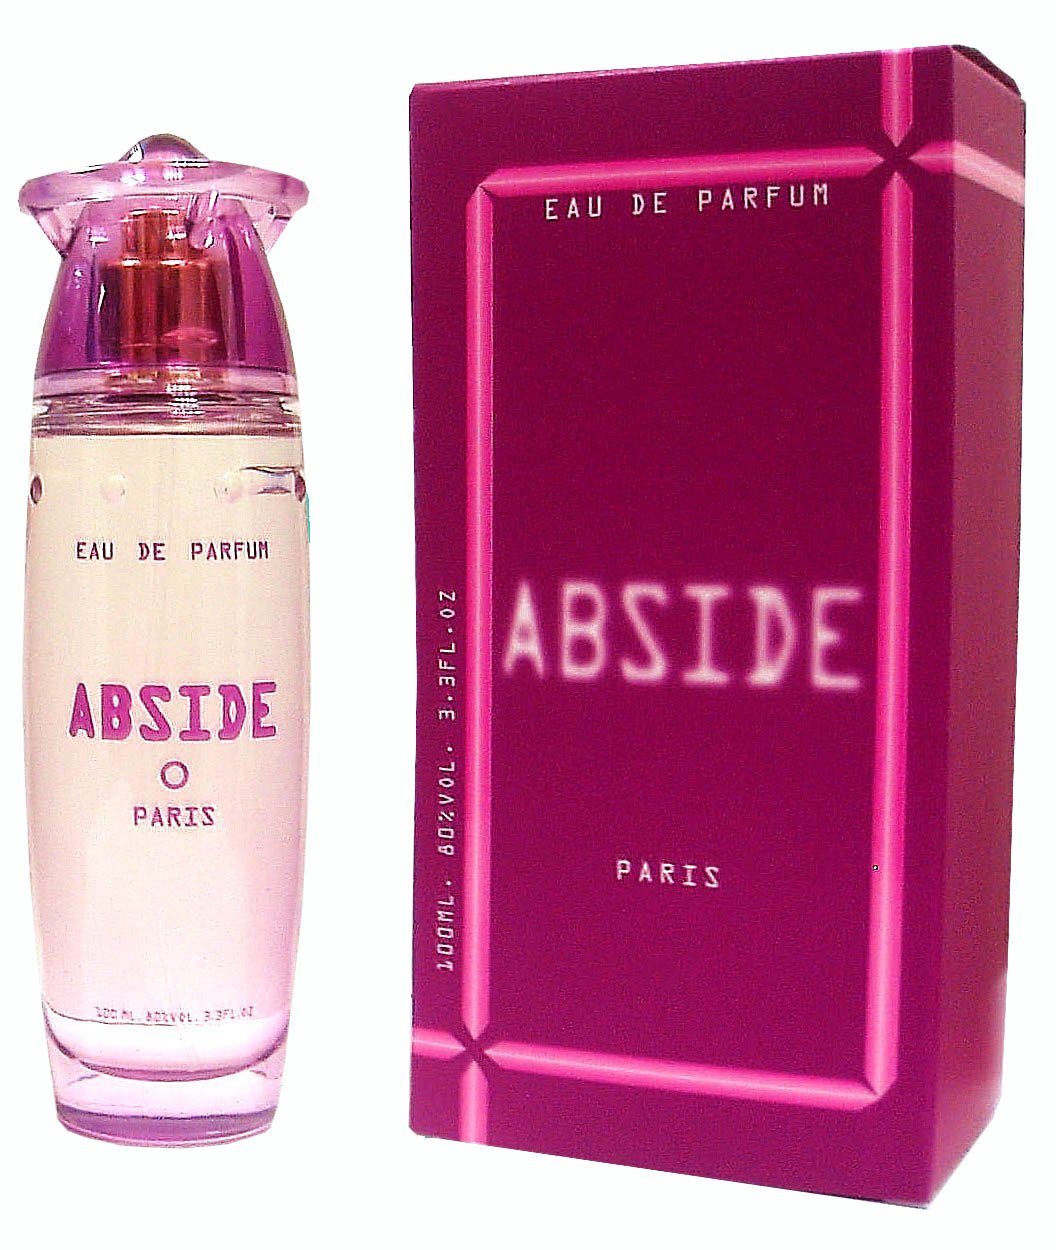 Perfumes & Cosmetics: Lacoste, women's perfume in Little Rock